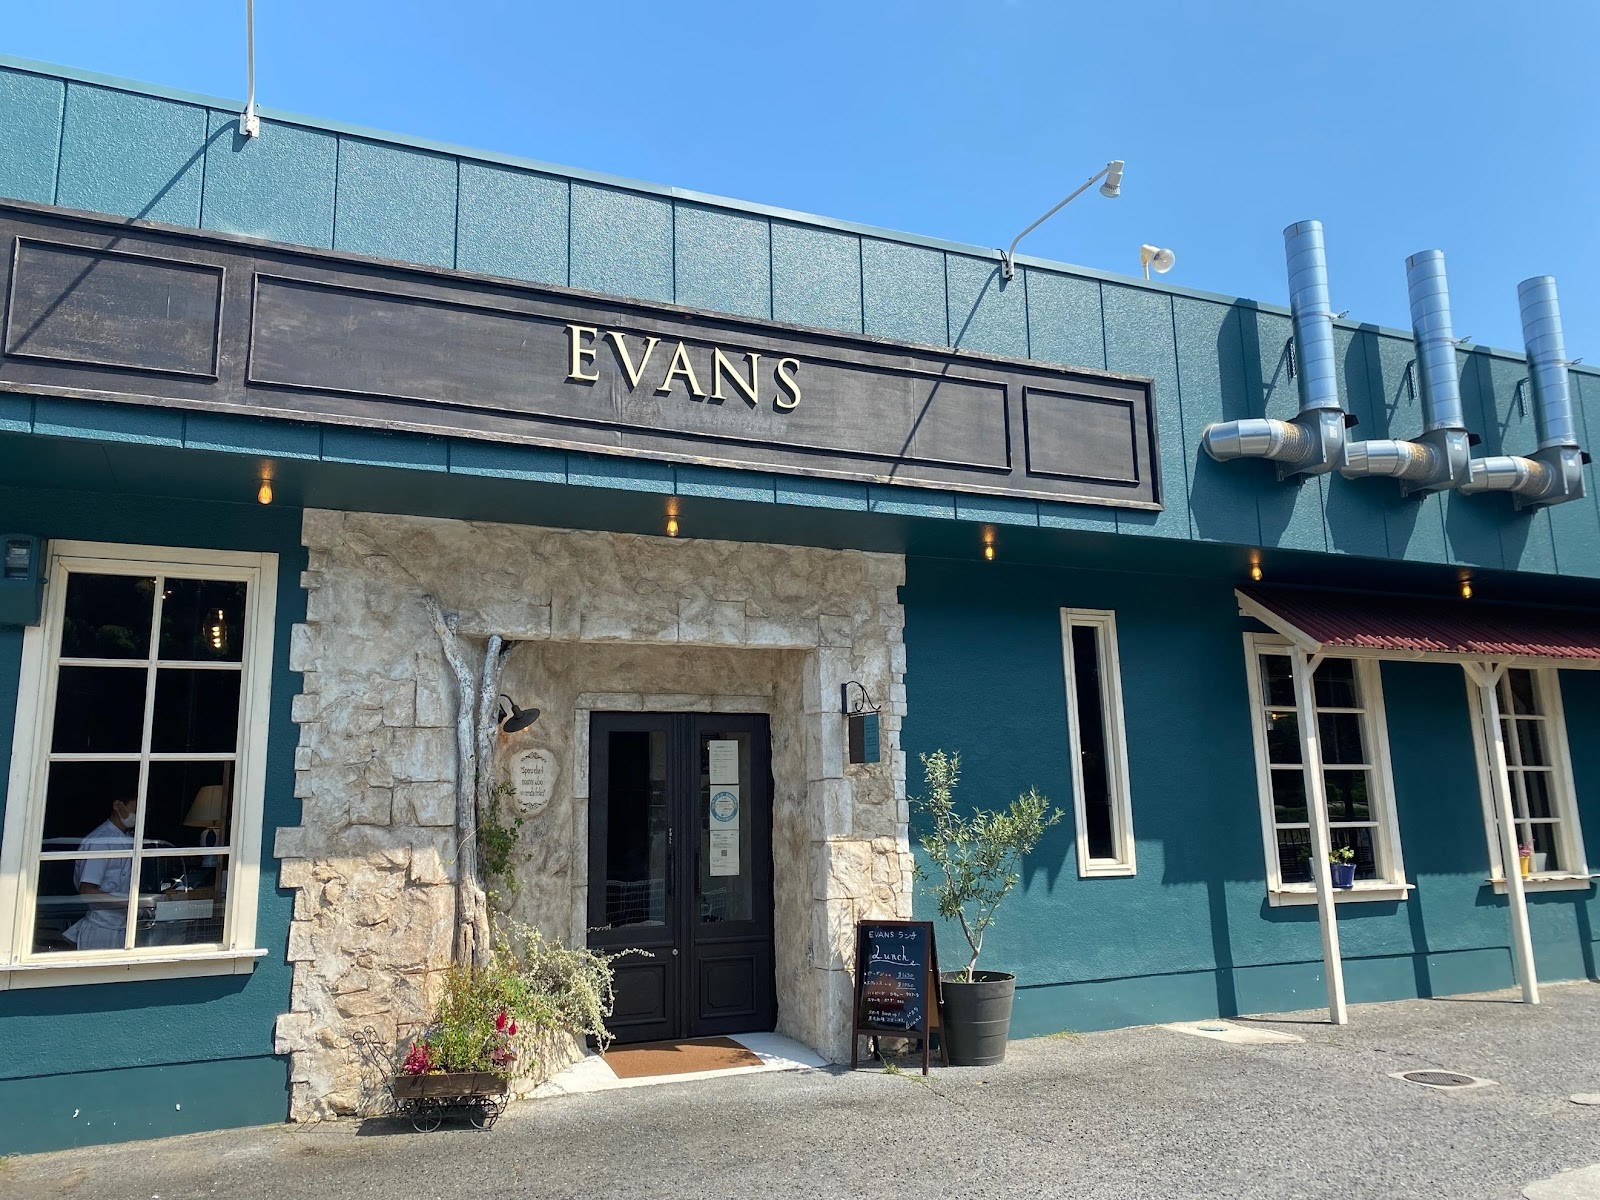 Evans シックな水色扉を開けたらそこは 暖かな陽光差し込むアットホームなイタリアンレストラン カフェ 優しさに溢れた絶品イタリアンを楽しみたいなら Evans へ